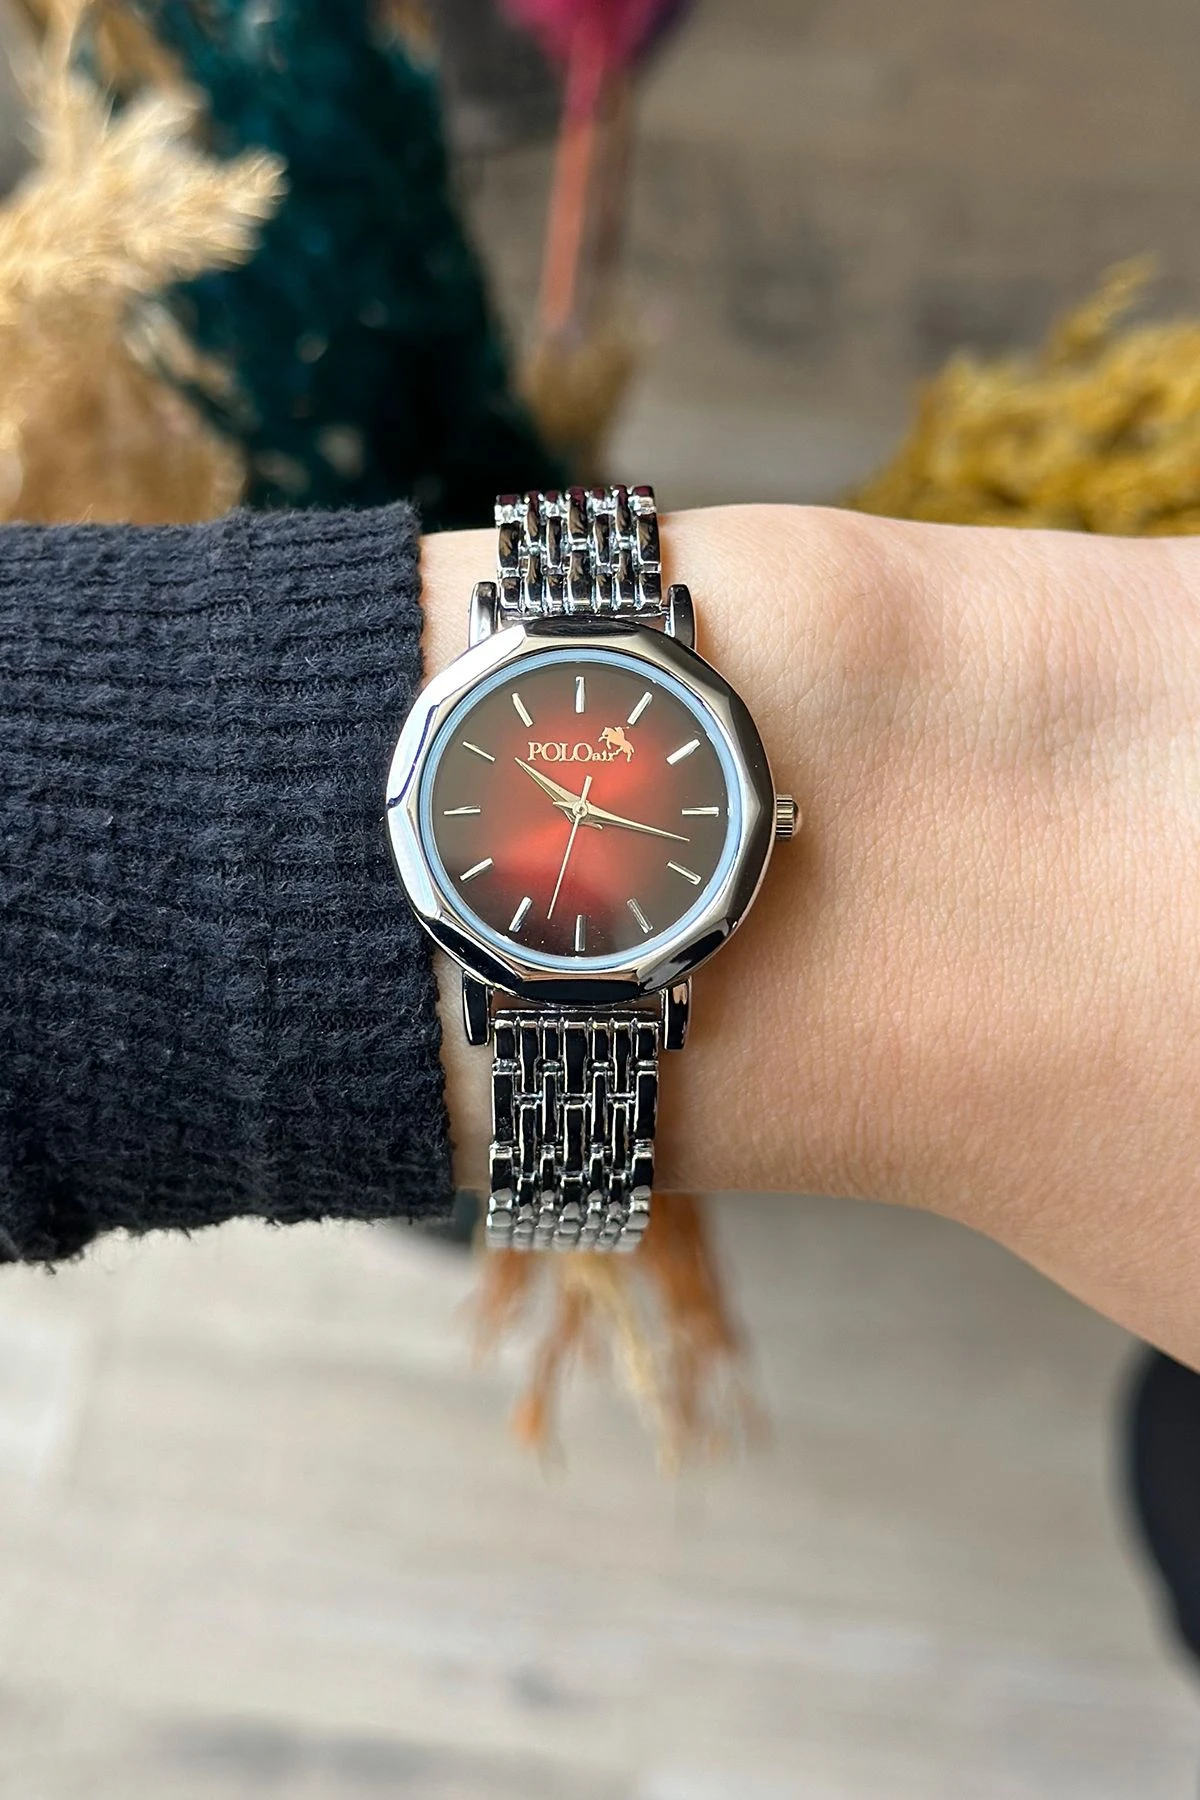 Zarif Vintage Kadın Kol Saati Gümüş-Kırmızı Renk Pl-1480B5X Kırmızı Pl-1480B5X